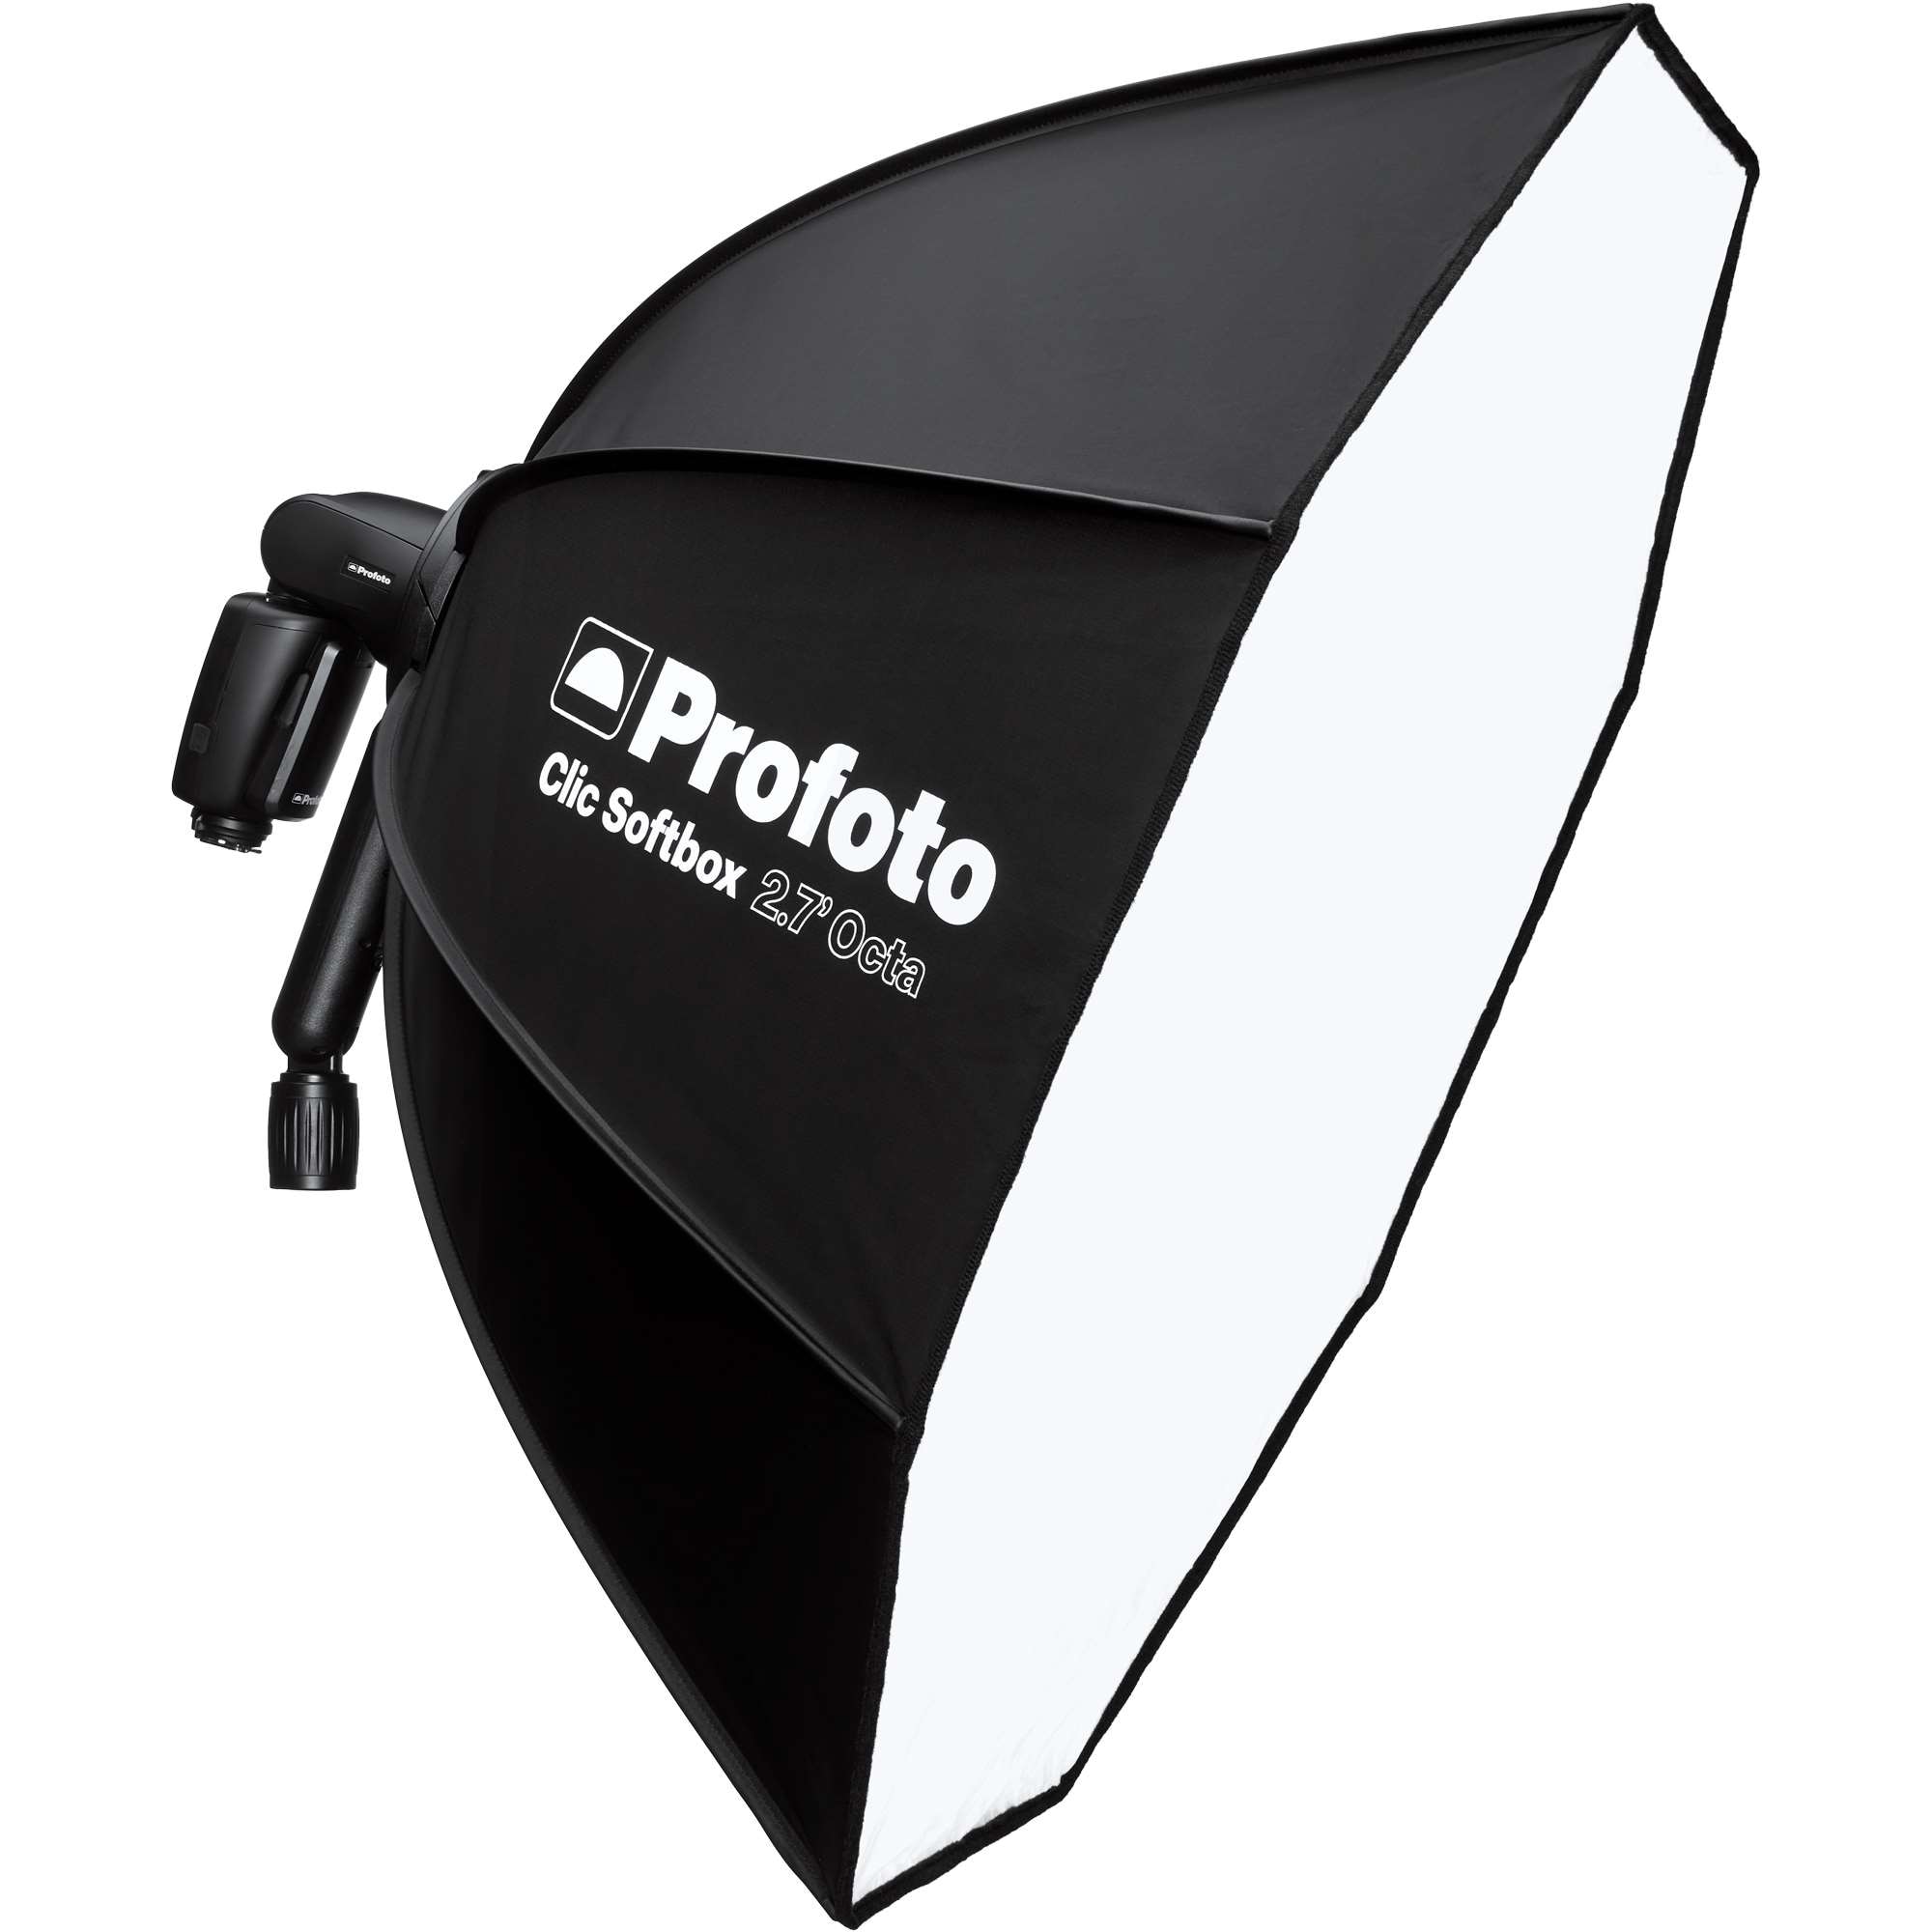 Profoto Clic Softbox 2.7' (80cm) Octa